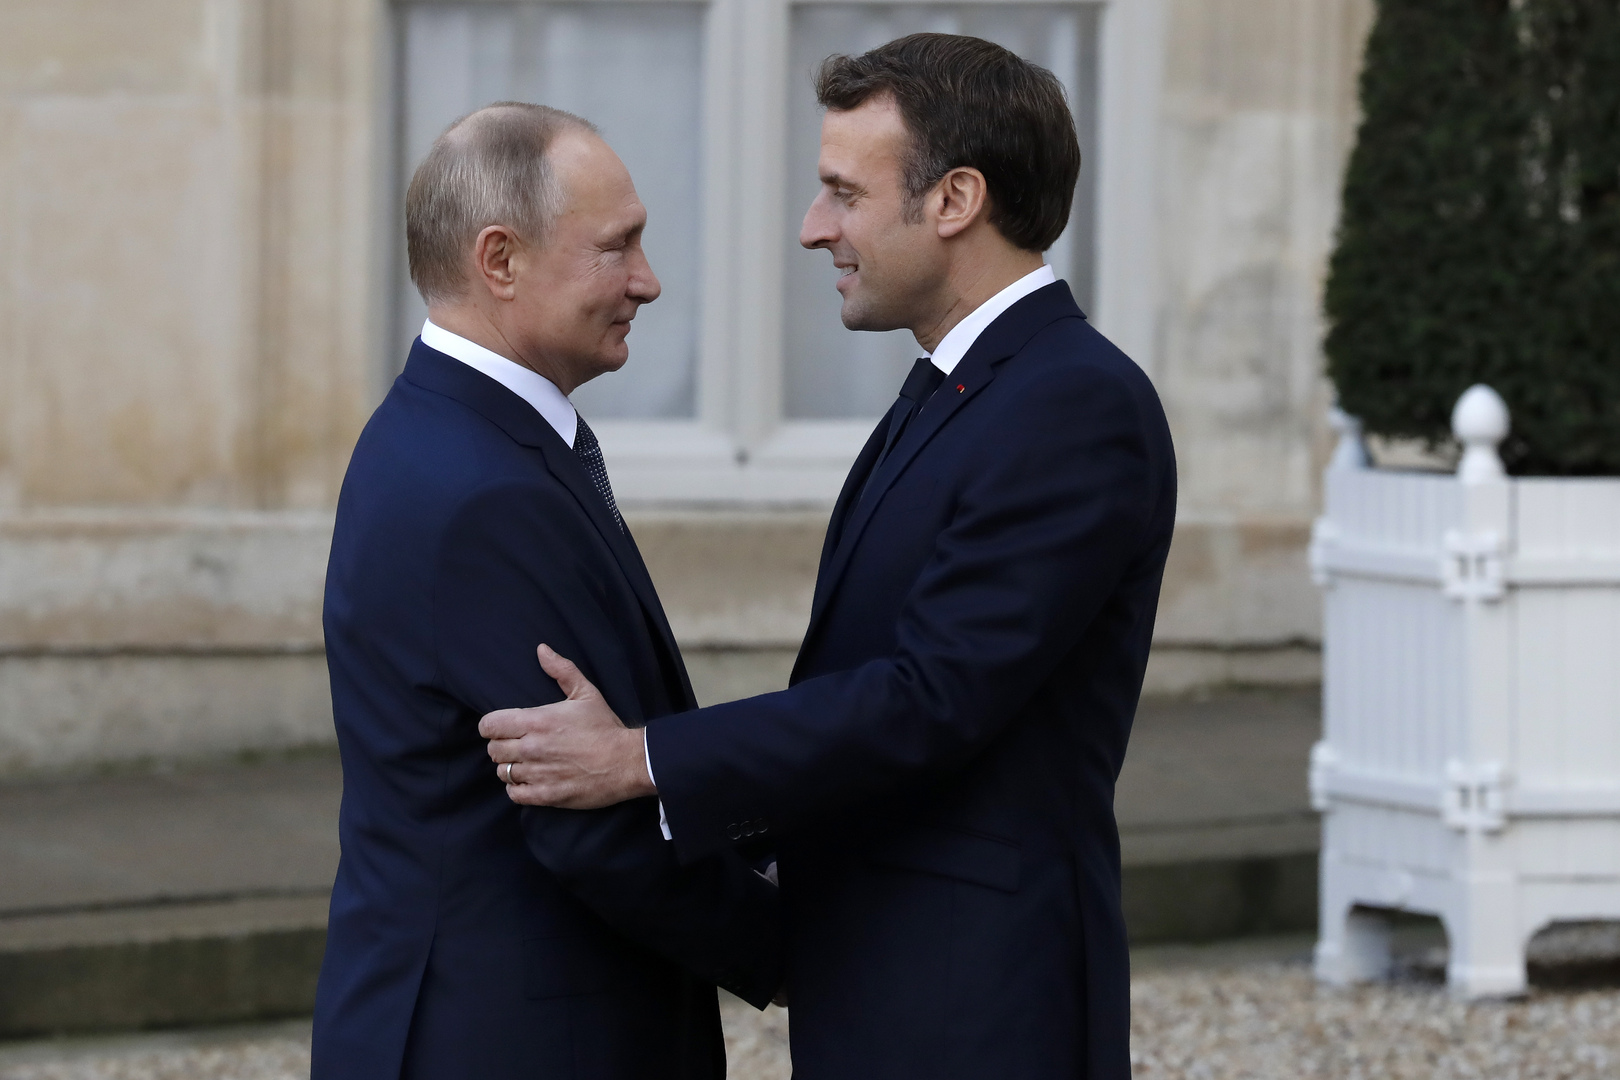 عواقب قطع باريس الحبل مع موسكو اقتصاديا.. ما هي المواد الخام التي تستوردها فرنسا من روسيا؟